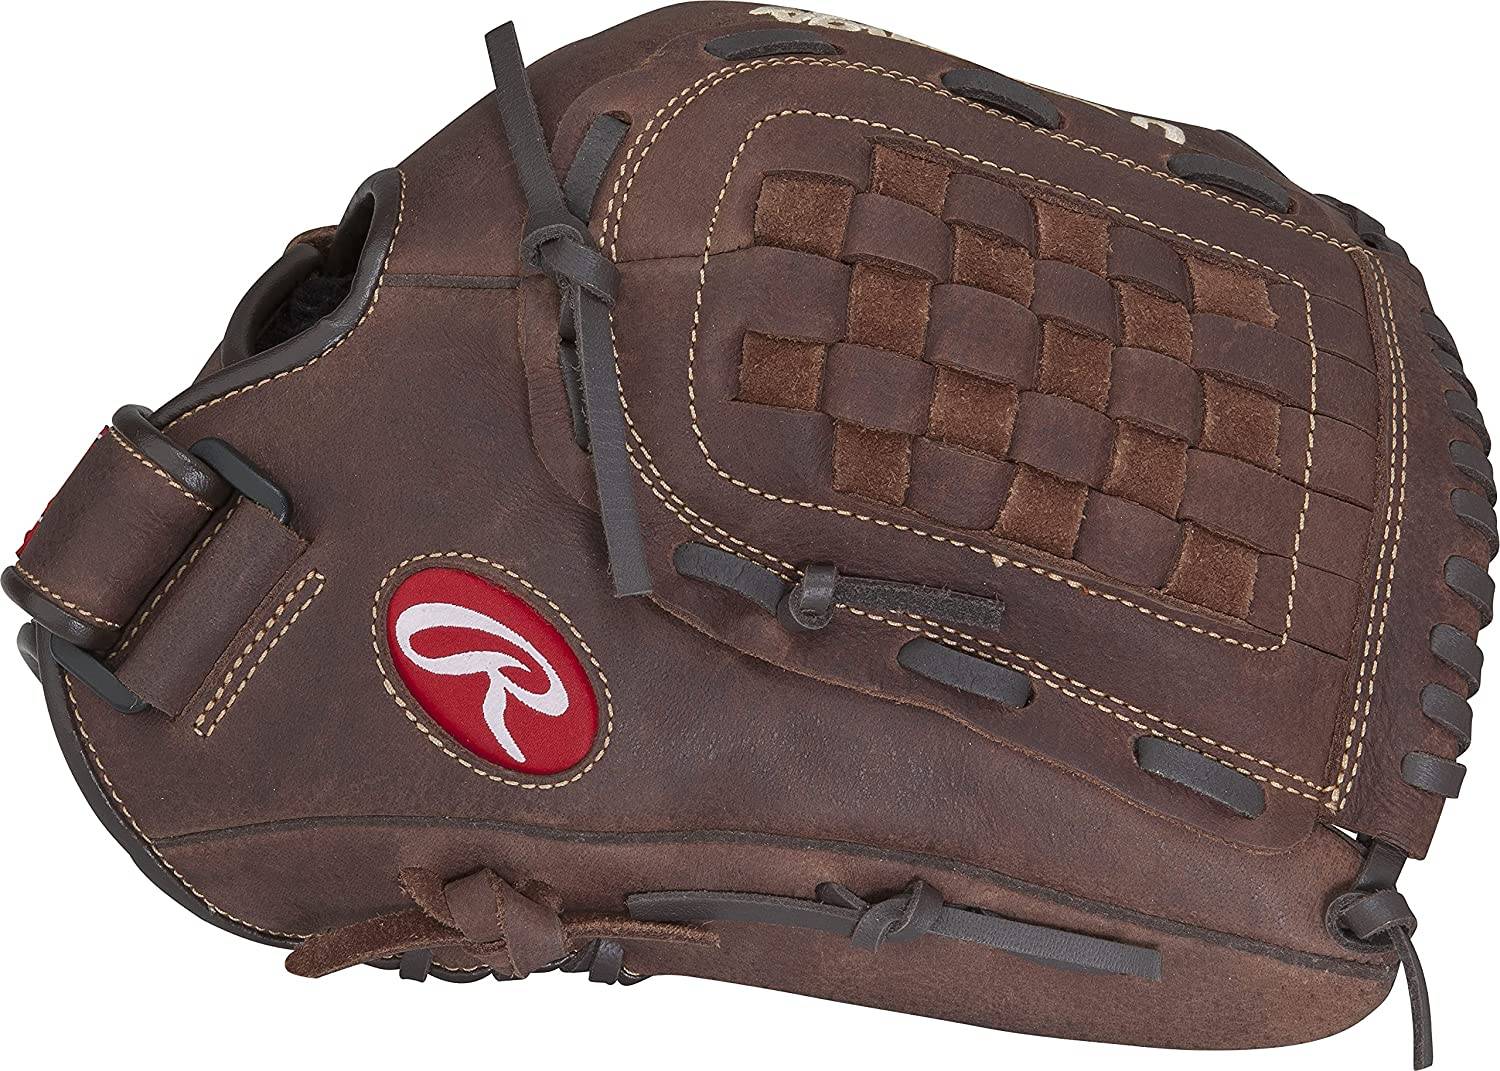 Rawlings Player Preferred Baseball Slow Pitch Softball Glove